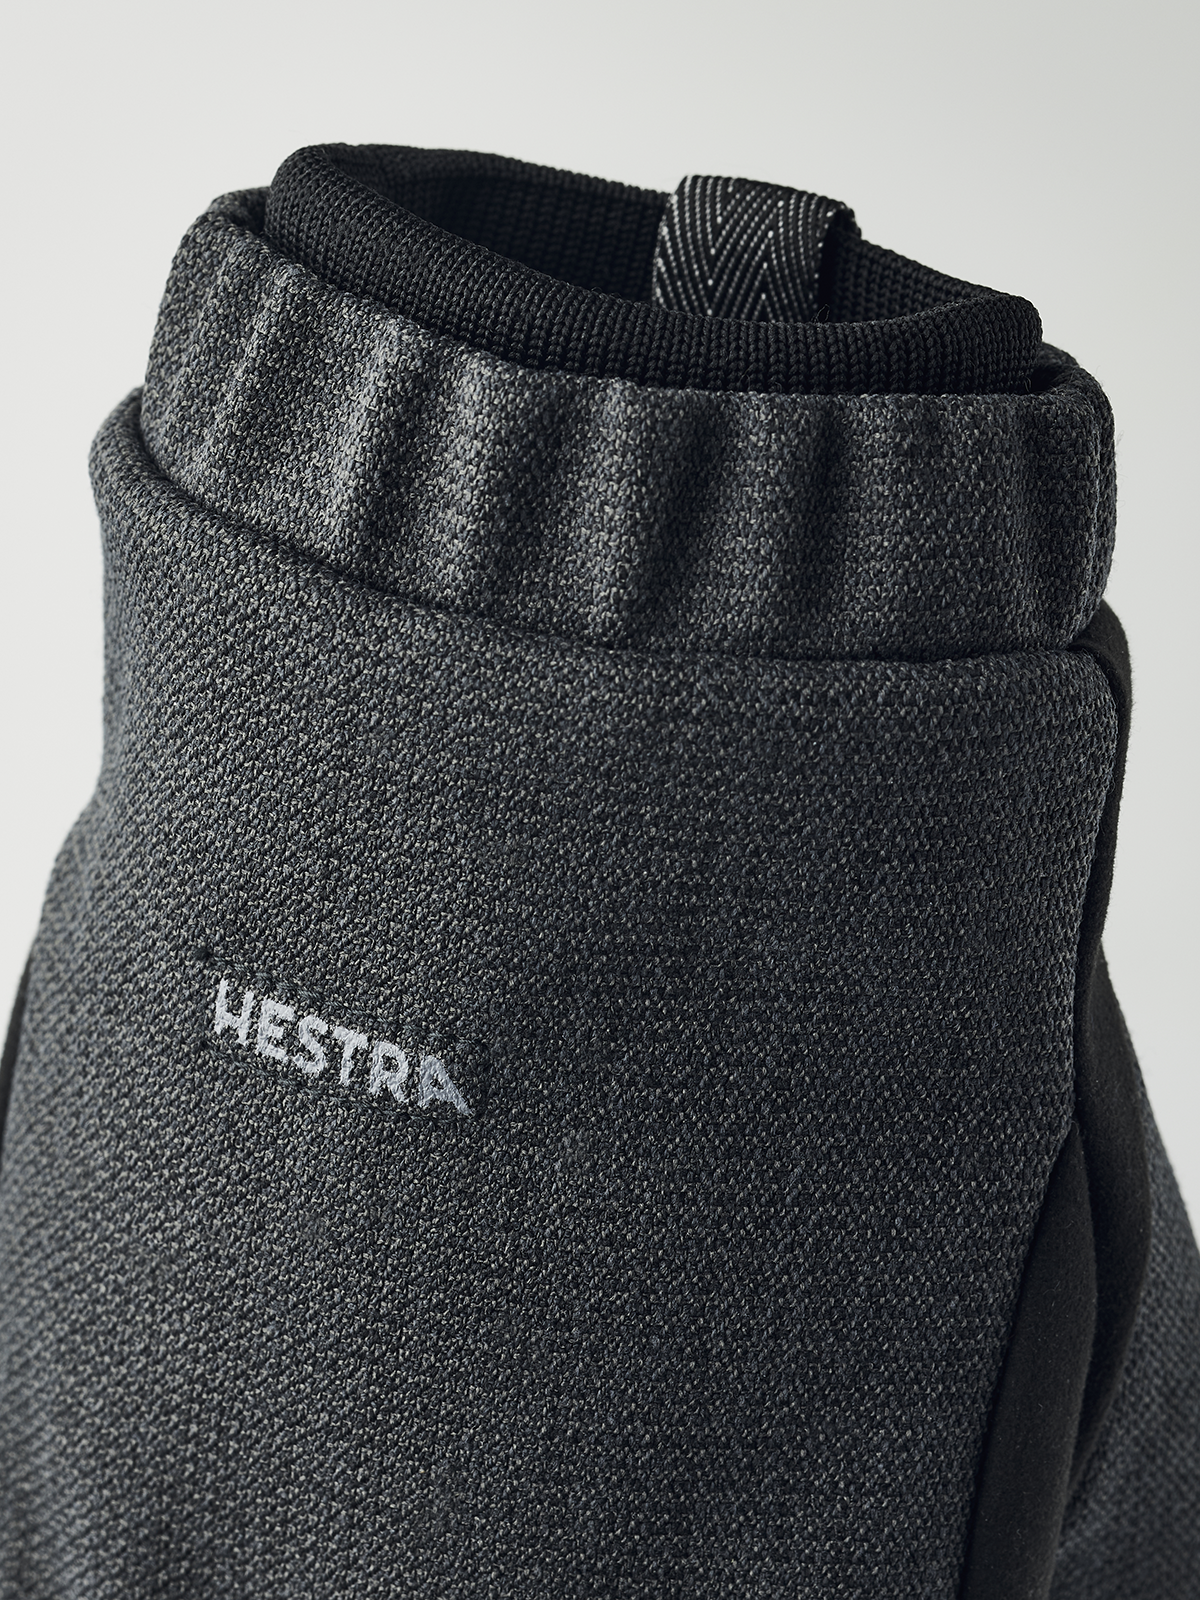 Men's Zephyr - Charcoal | Hestra Gloves